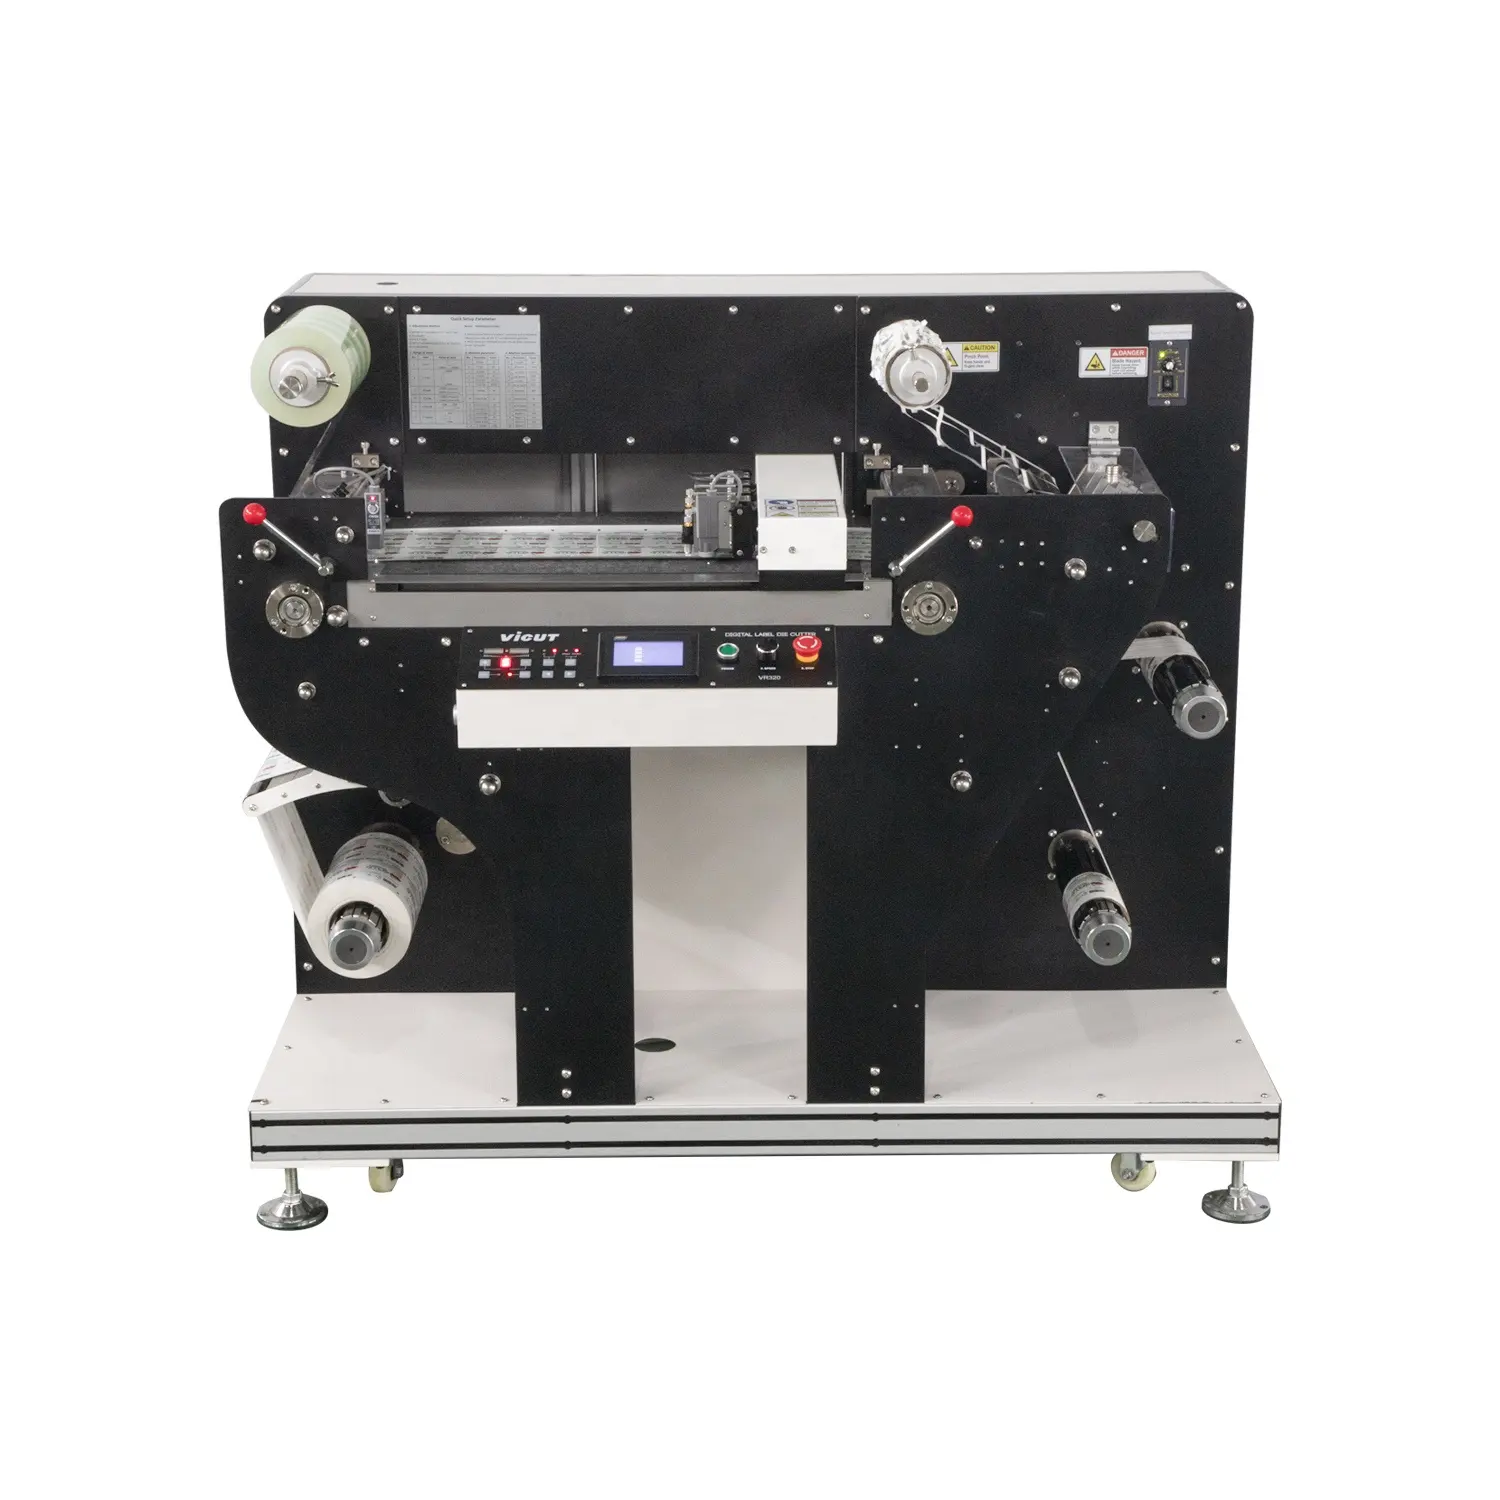 Machine rotative de découpe d'étiquettes rouleau à feuille, machine de découpe d'étiquettes rouleau à feuille en plastique à plusieurs têtes